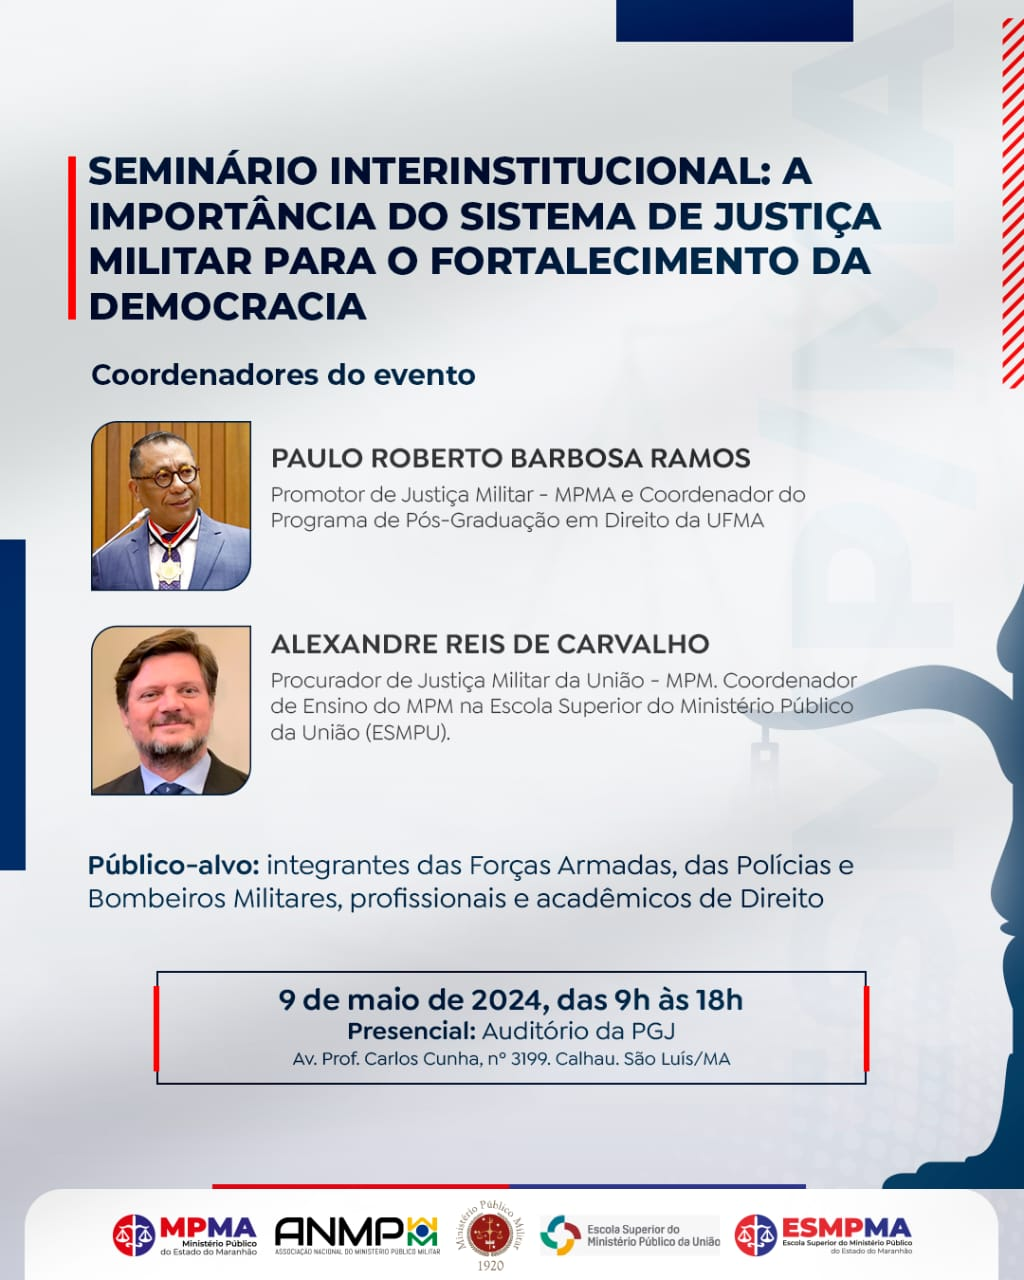 Seminário Interinstitucional: A importância do Sistema de Justiça Militar para o Fortalecimento da Democracia